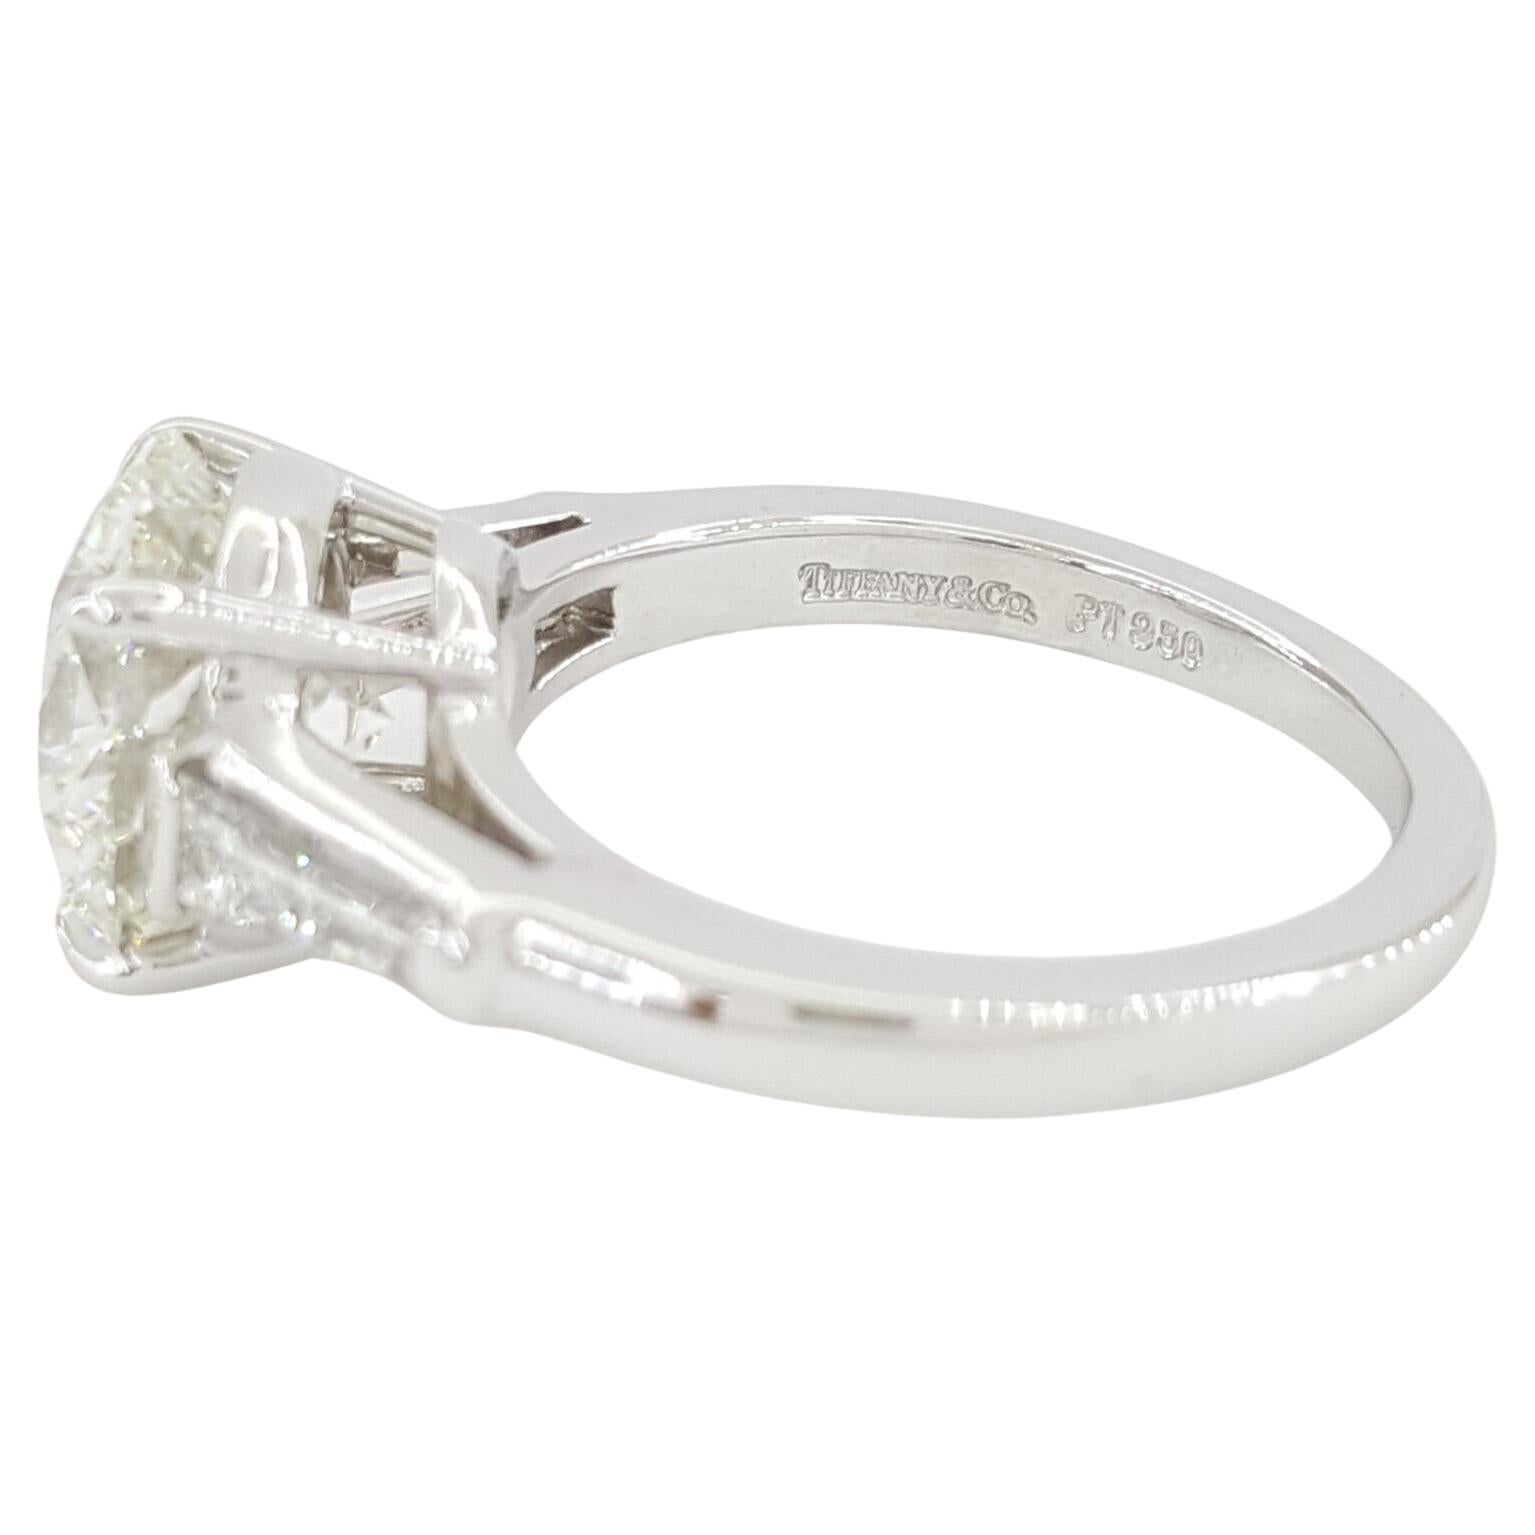  Tiffany & Co. 3(83) ct de poids total Platinum Round Brilliant Cut Diamond Three Stone Engagement Ring. 



La bague pèse 7,9 grammes, taille 5,5, le centre est un diamant rond naturel de taille Brilliante pesant 3,33 ct, de couleur I, de pureté